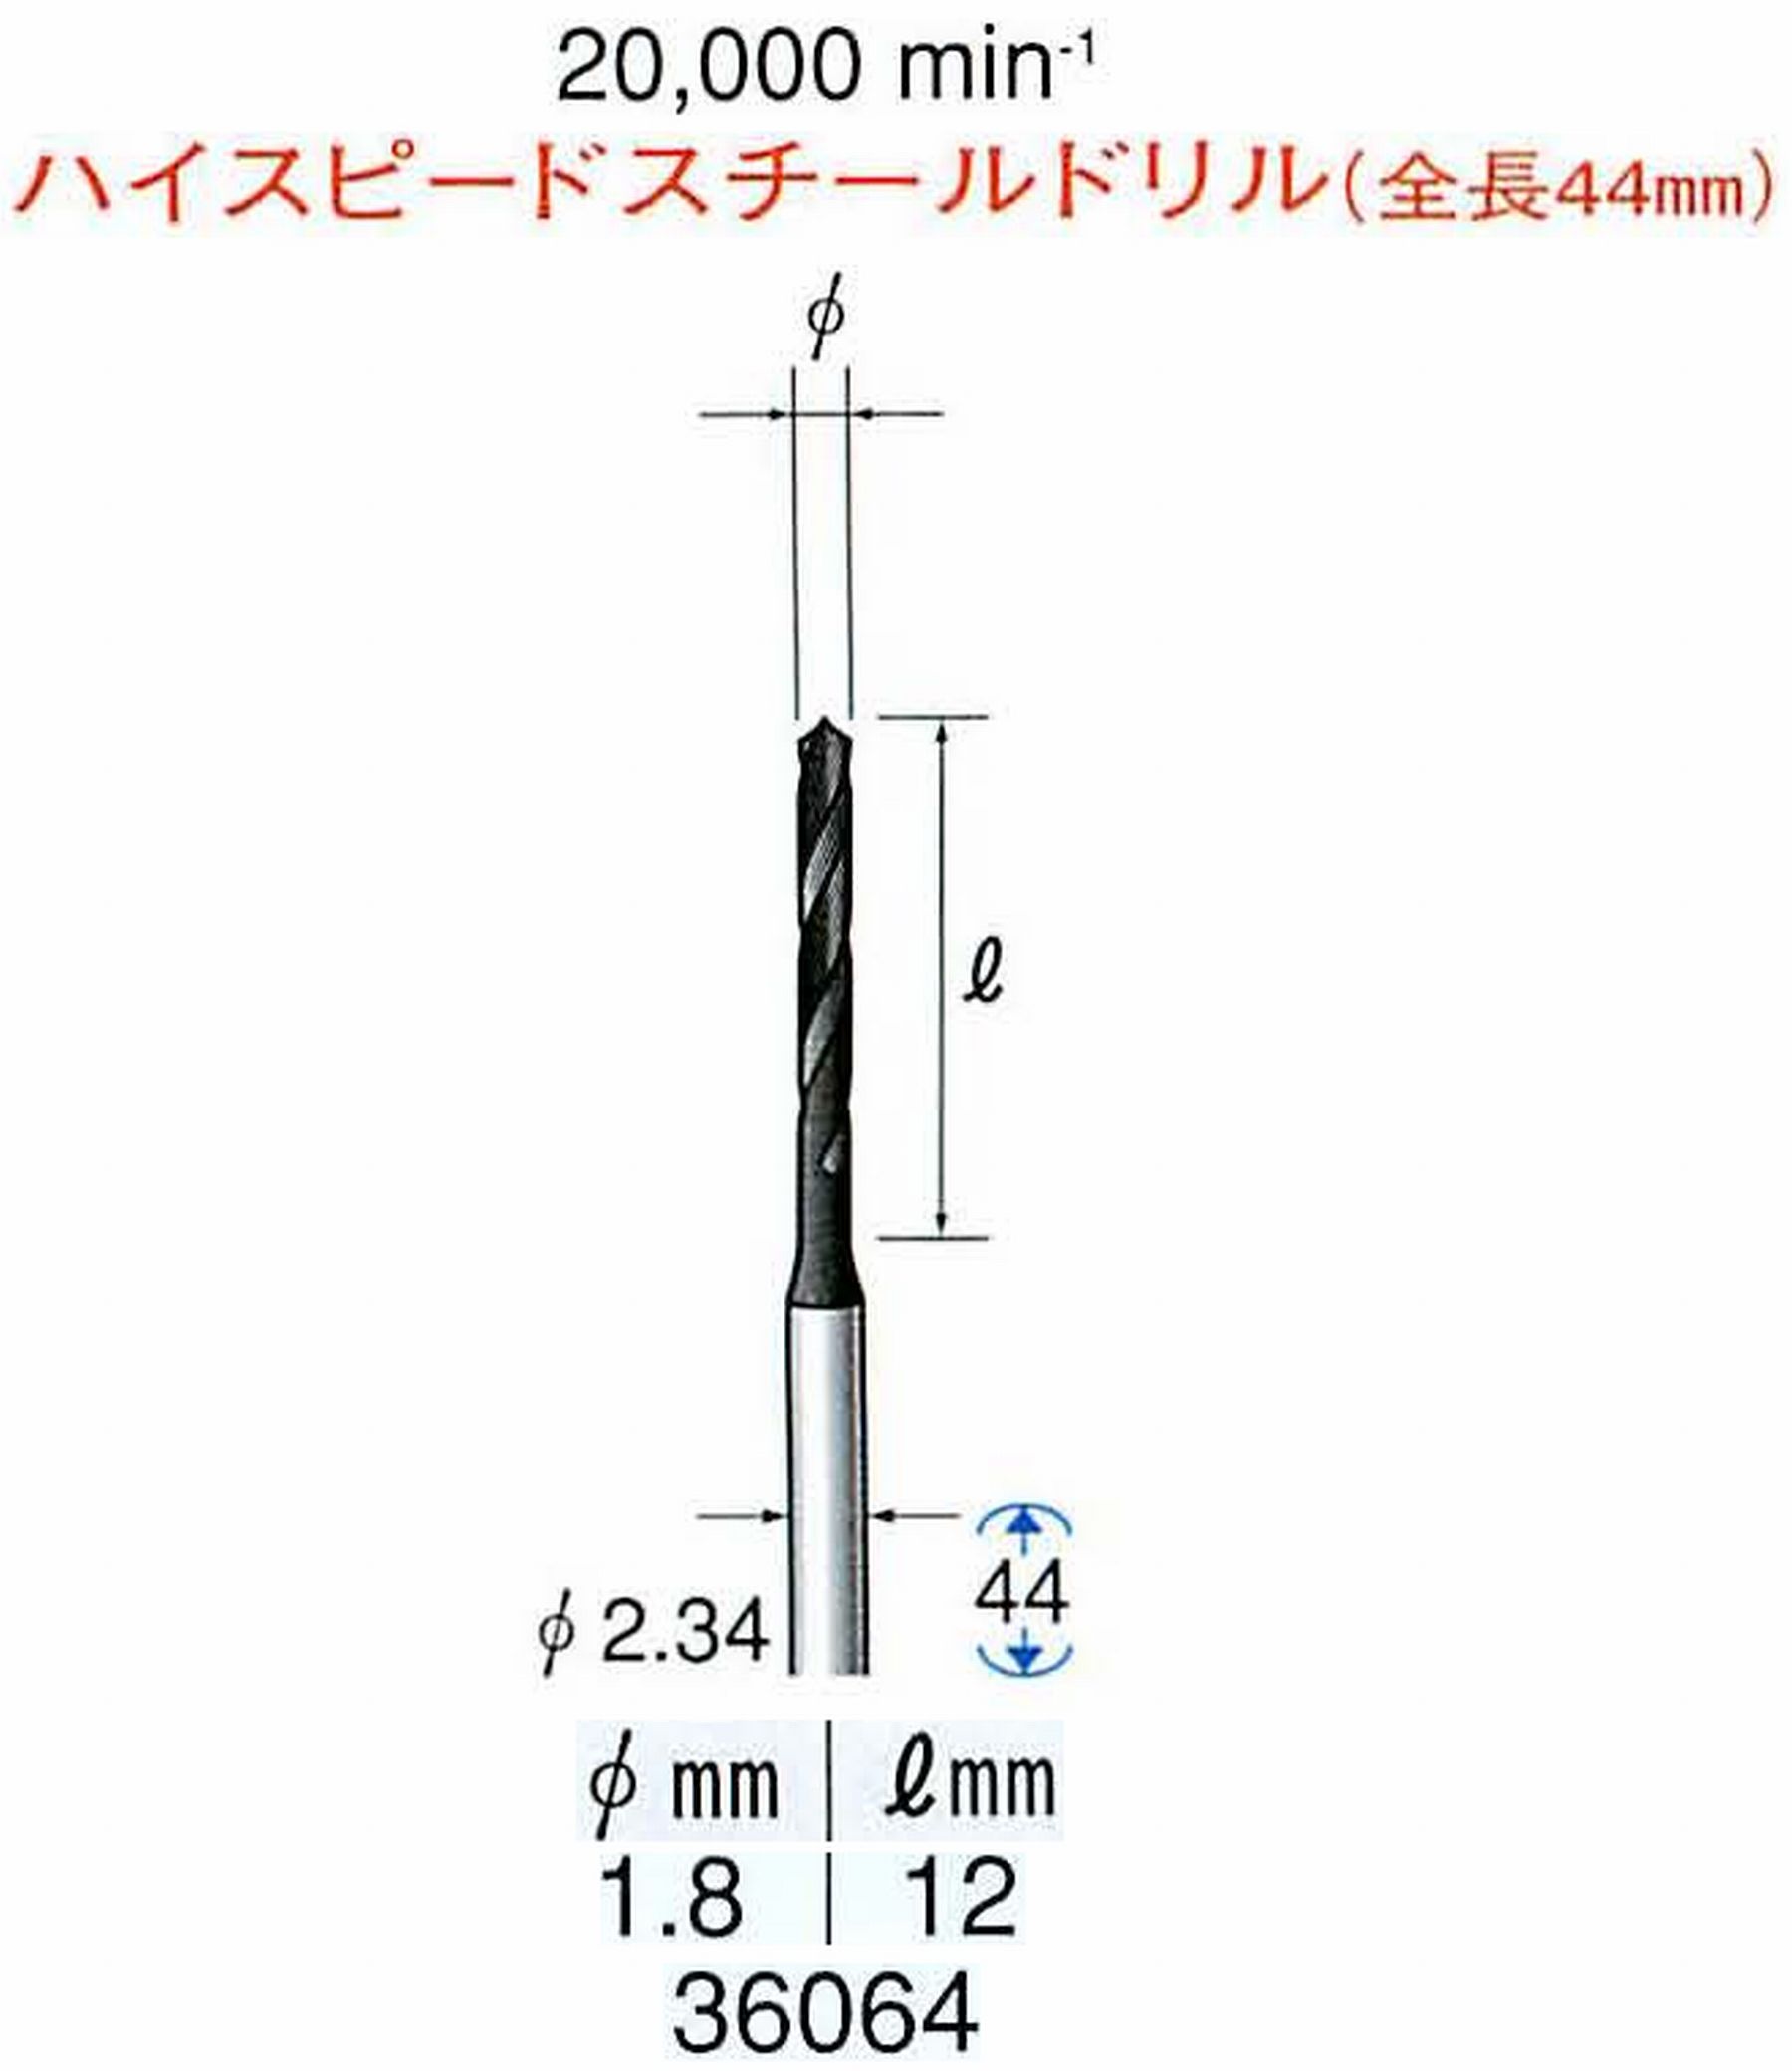 ナカニシ/NAKANISHI ツイストドリル ハイスピードスチール(H.S.S)ドリル(全長44mm) 軸径(シャンク) φ2.34mm 36064